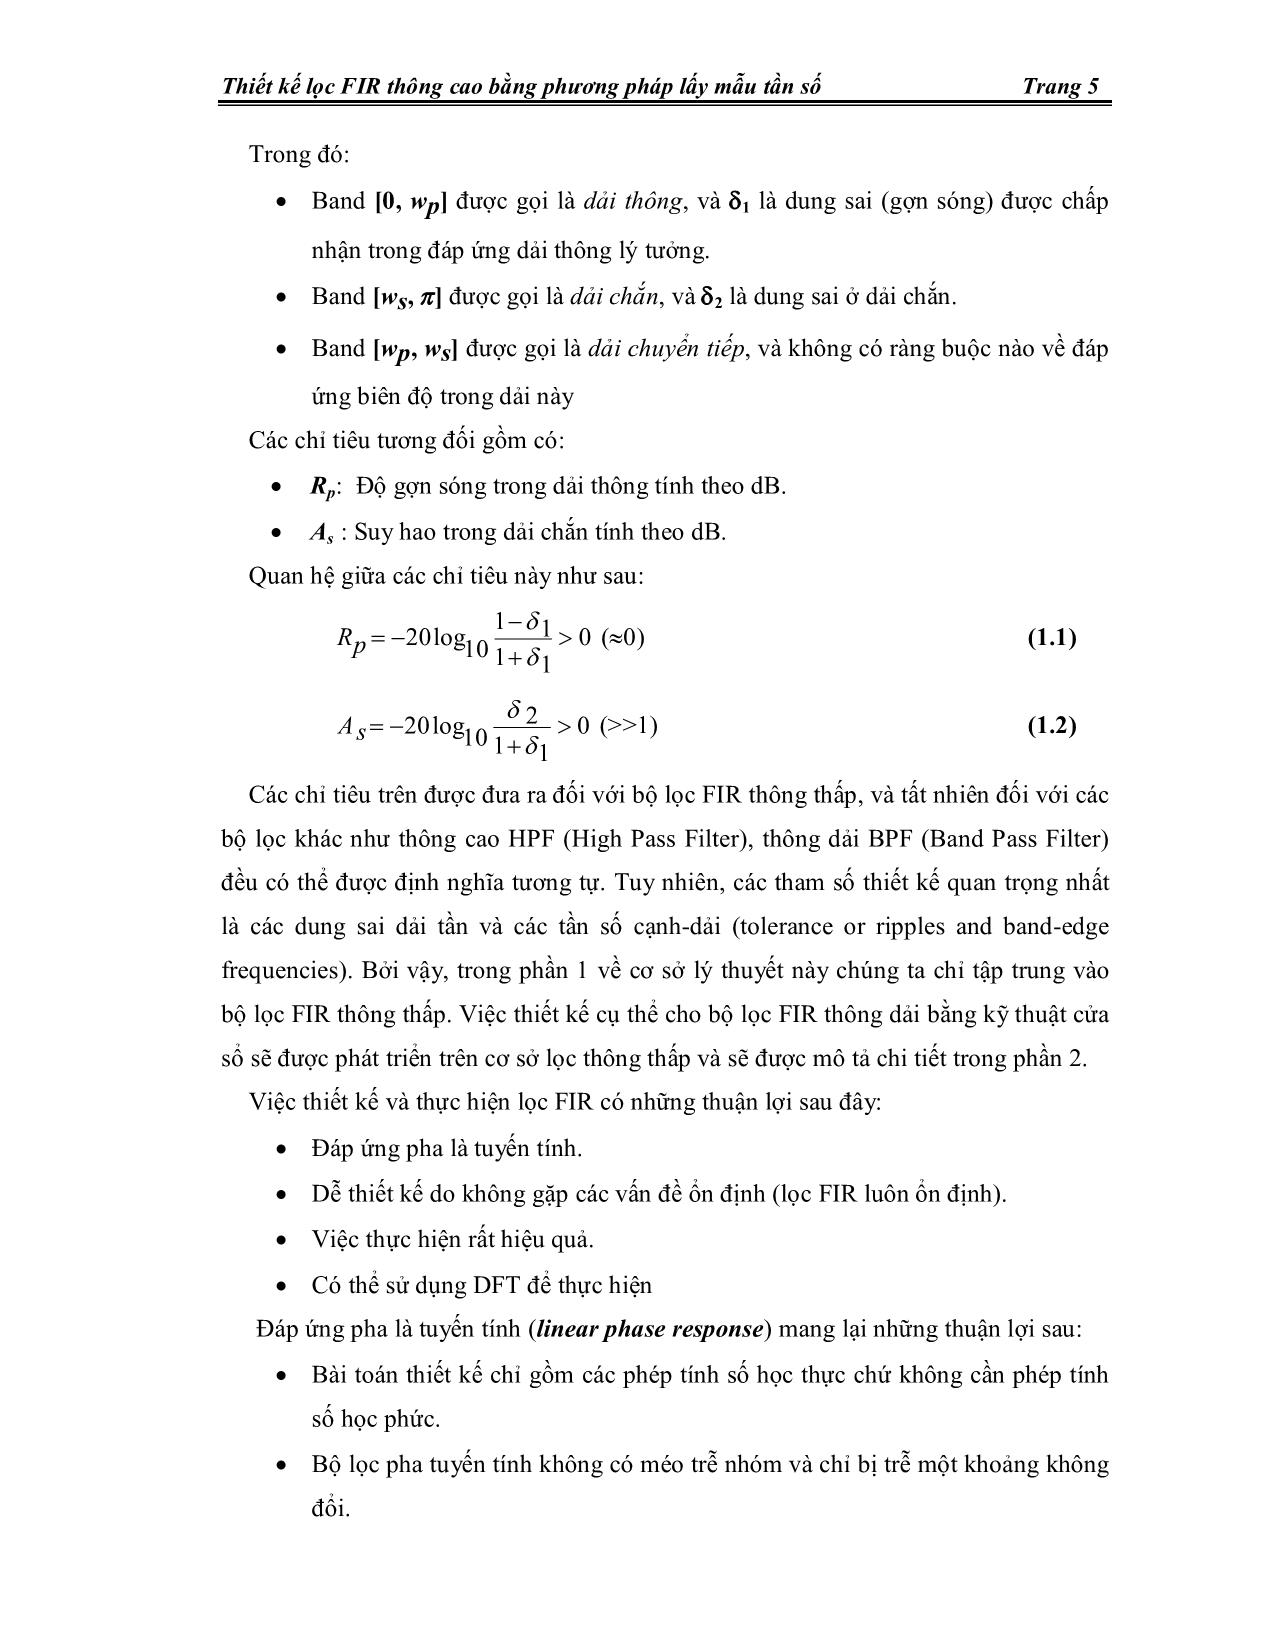 Đề tài Thiết kế bộ lọc fir thông cao bằng phương pháp lấy mẫu tần số trang 5